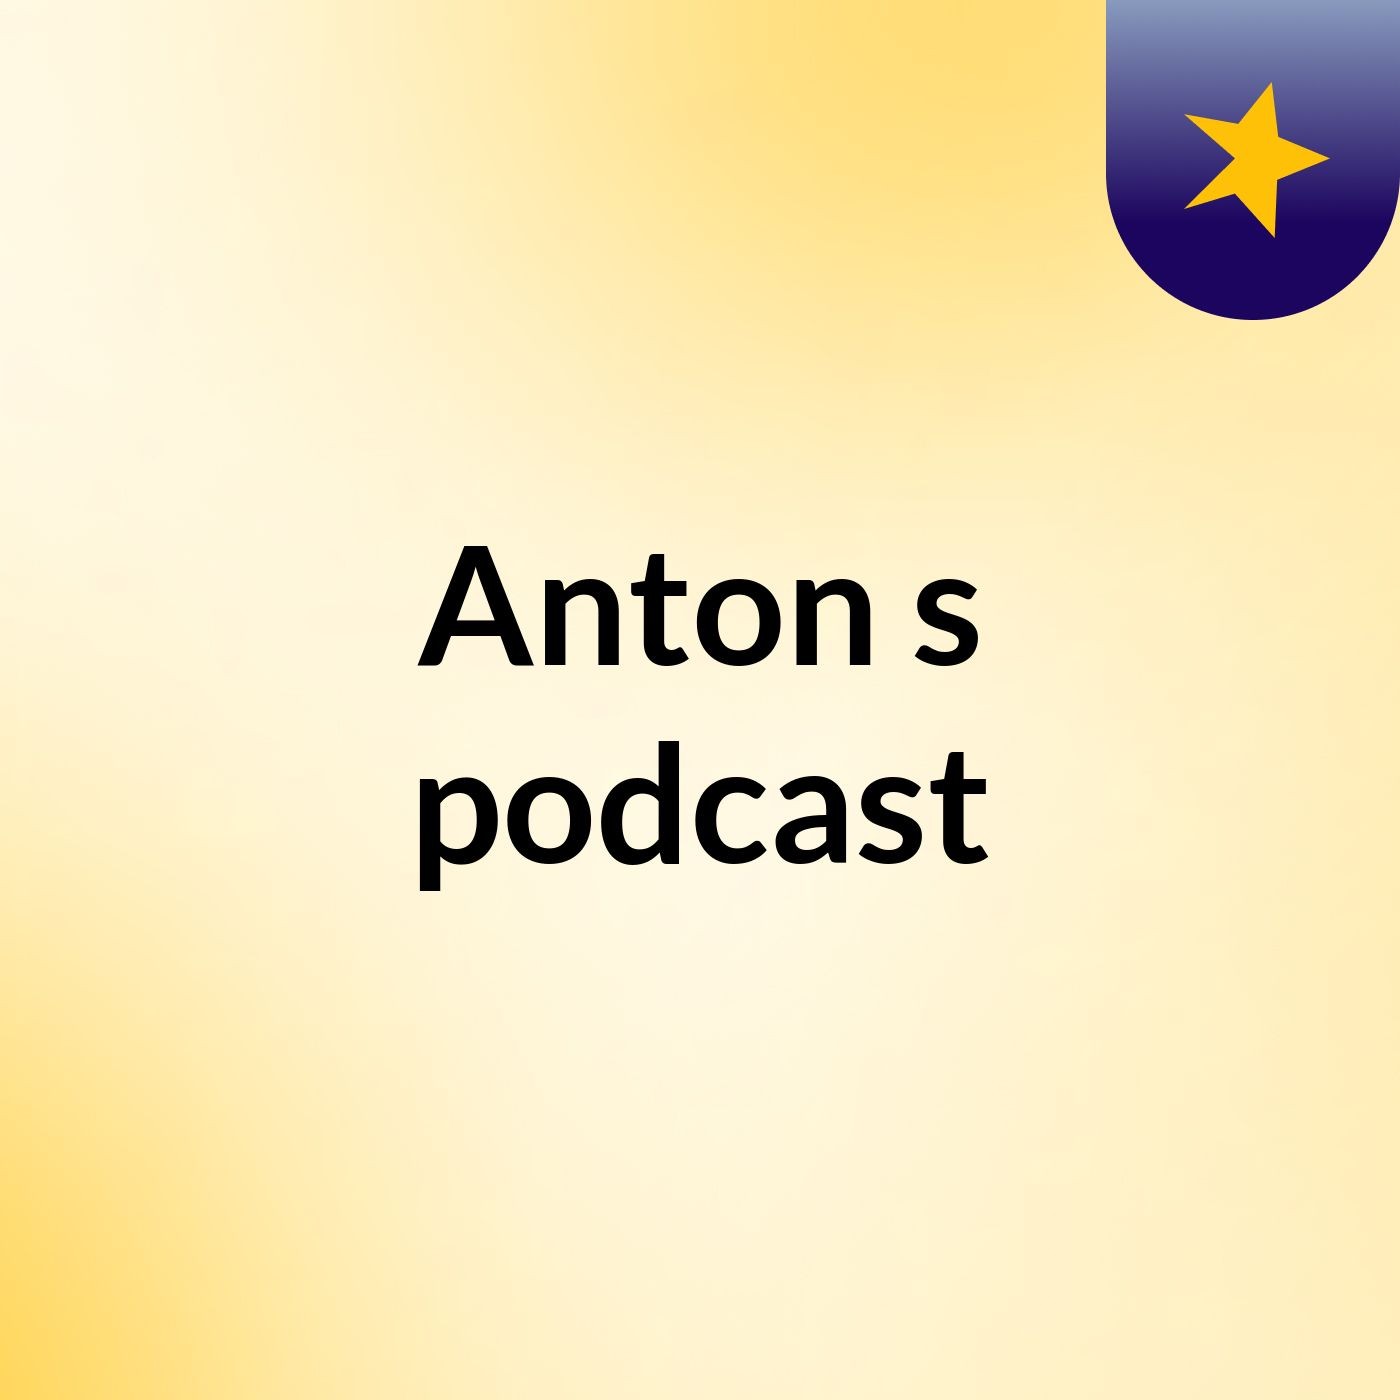 Anton's podcast